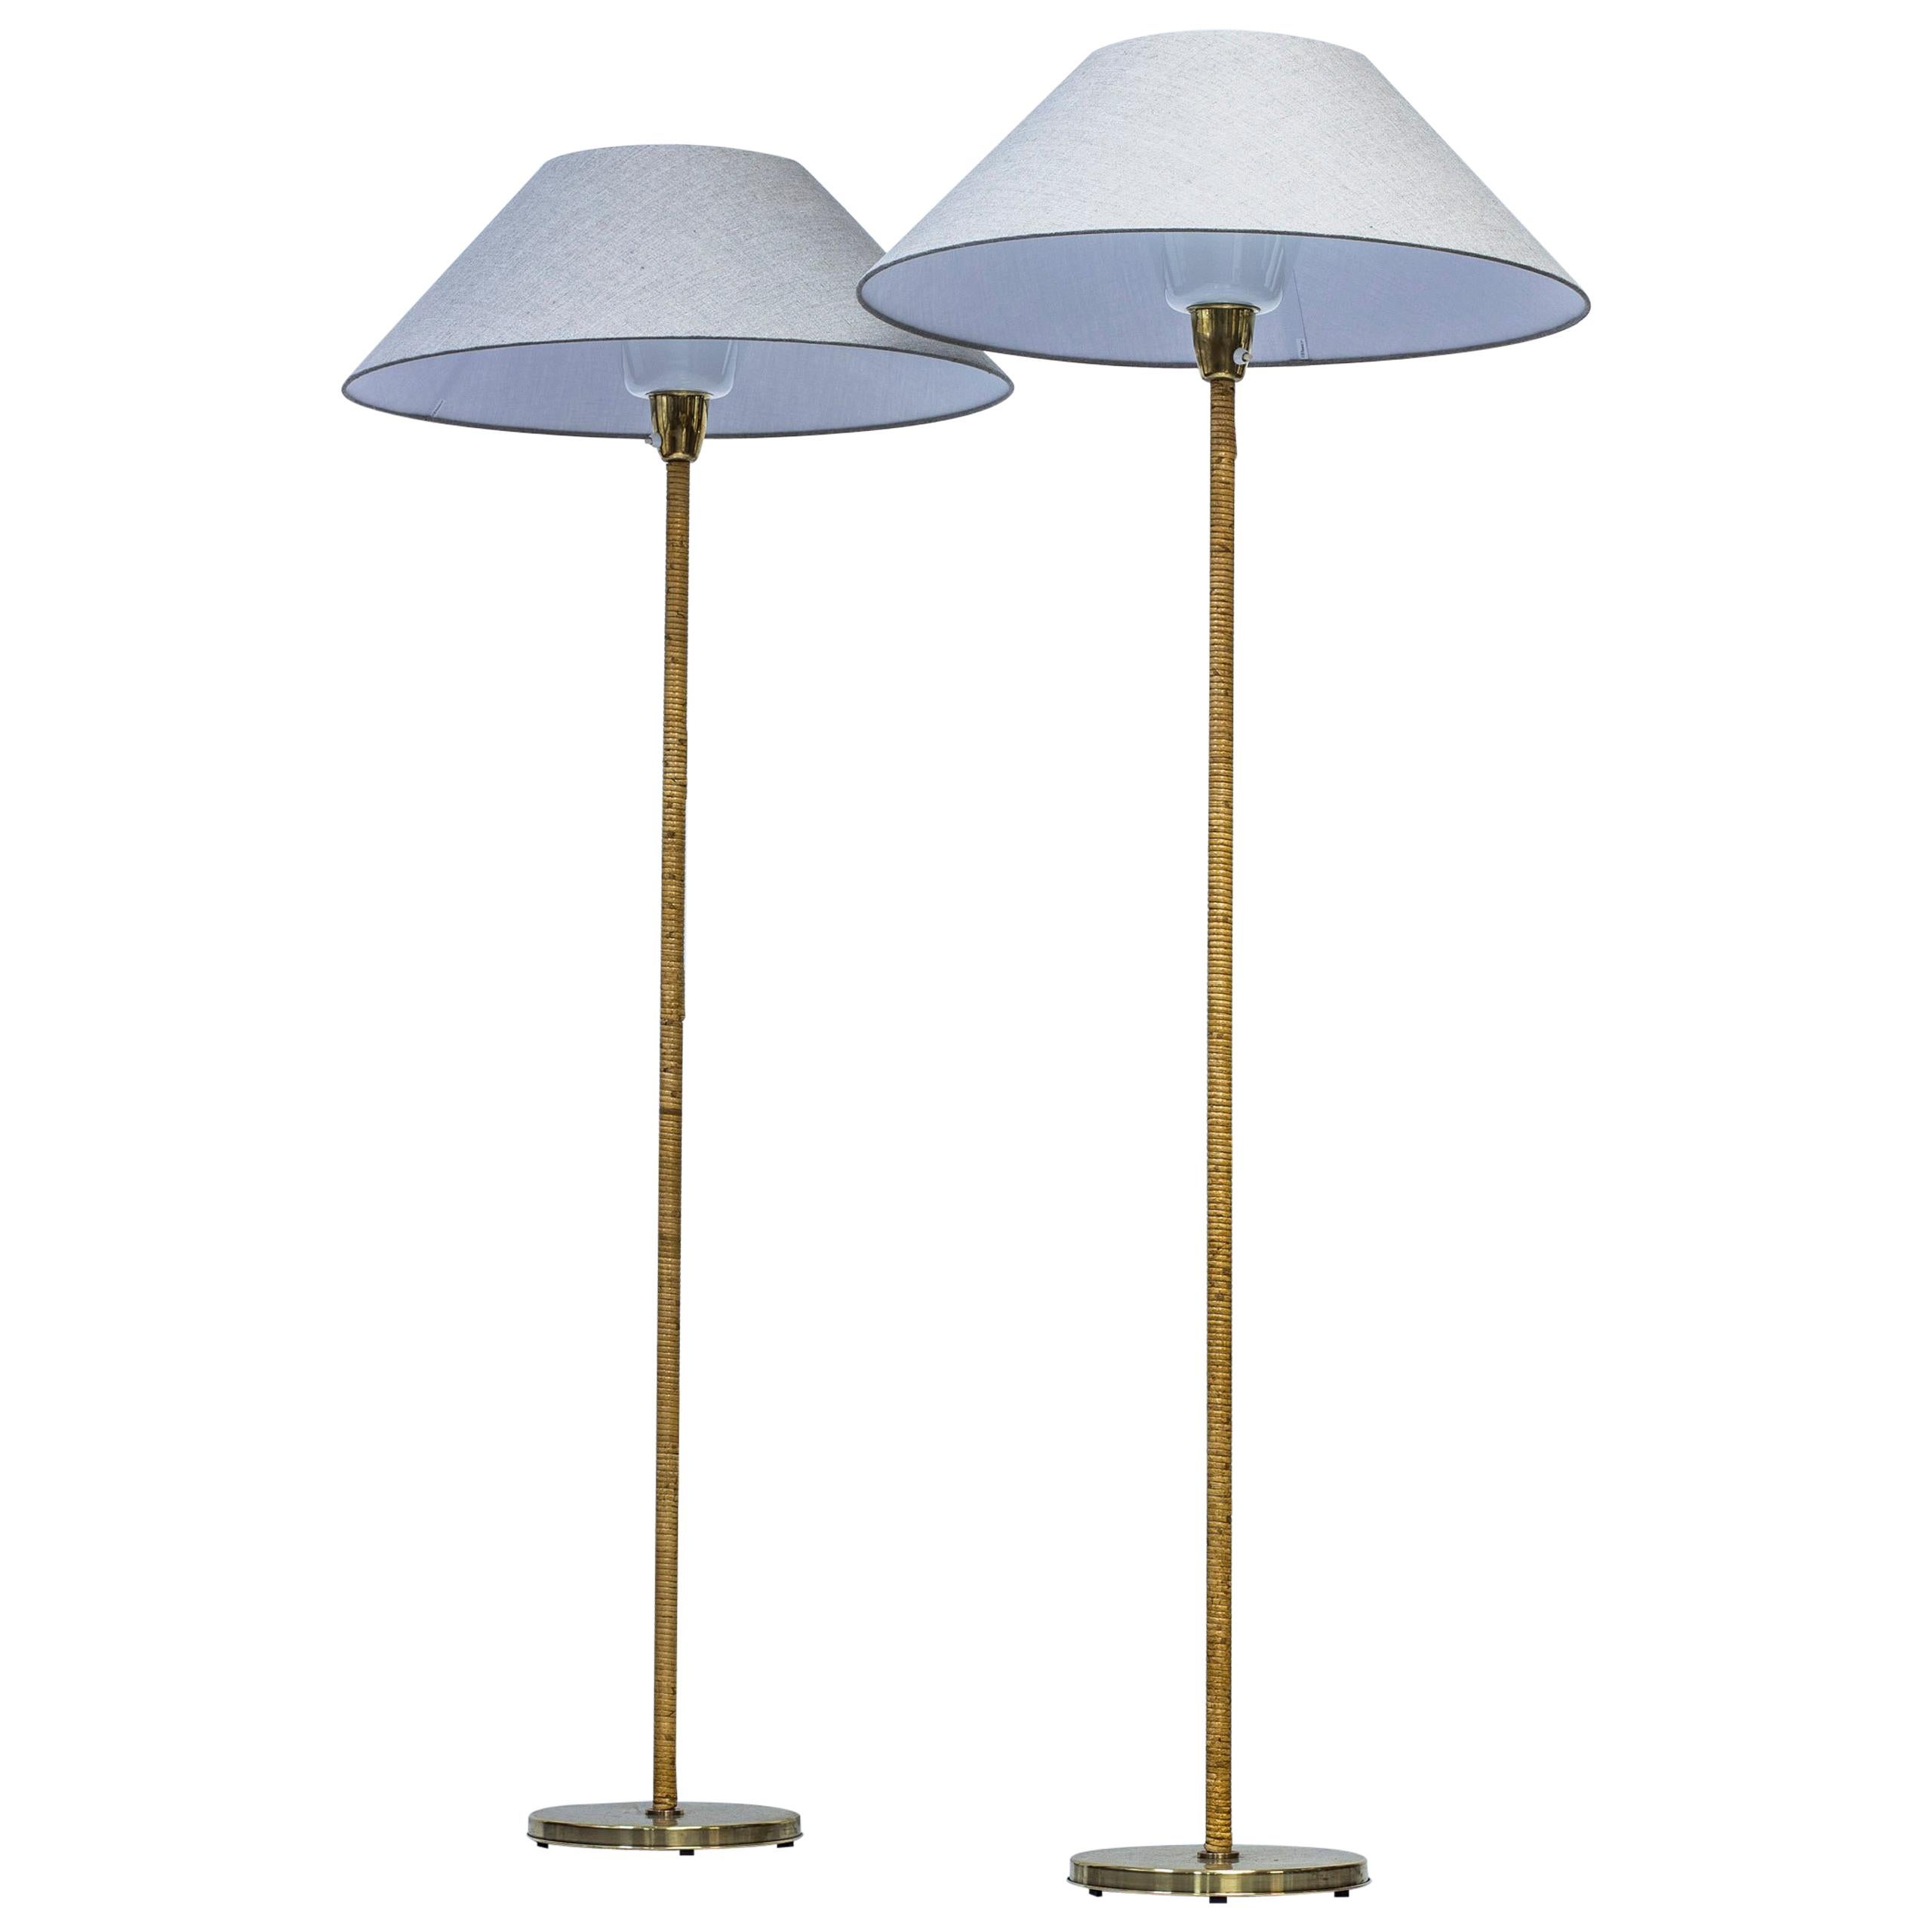 Scandinavian Midcentury Floor Lamps Model "G-05" by Bergboms, 1950s